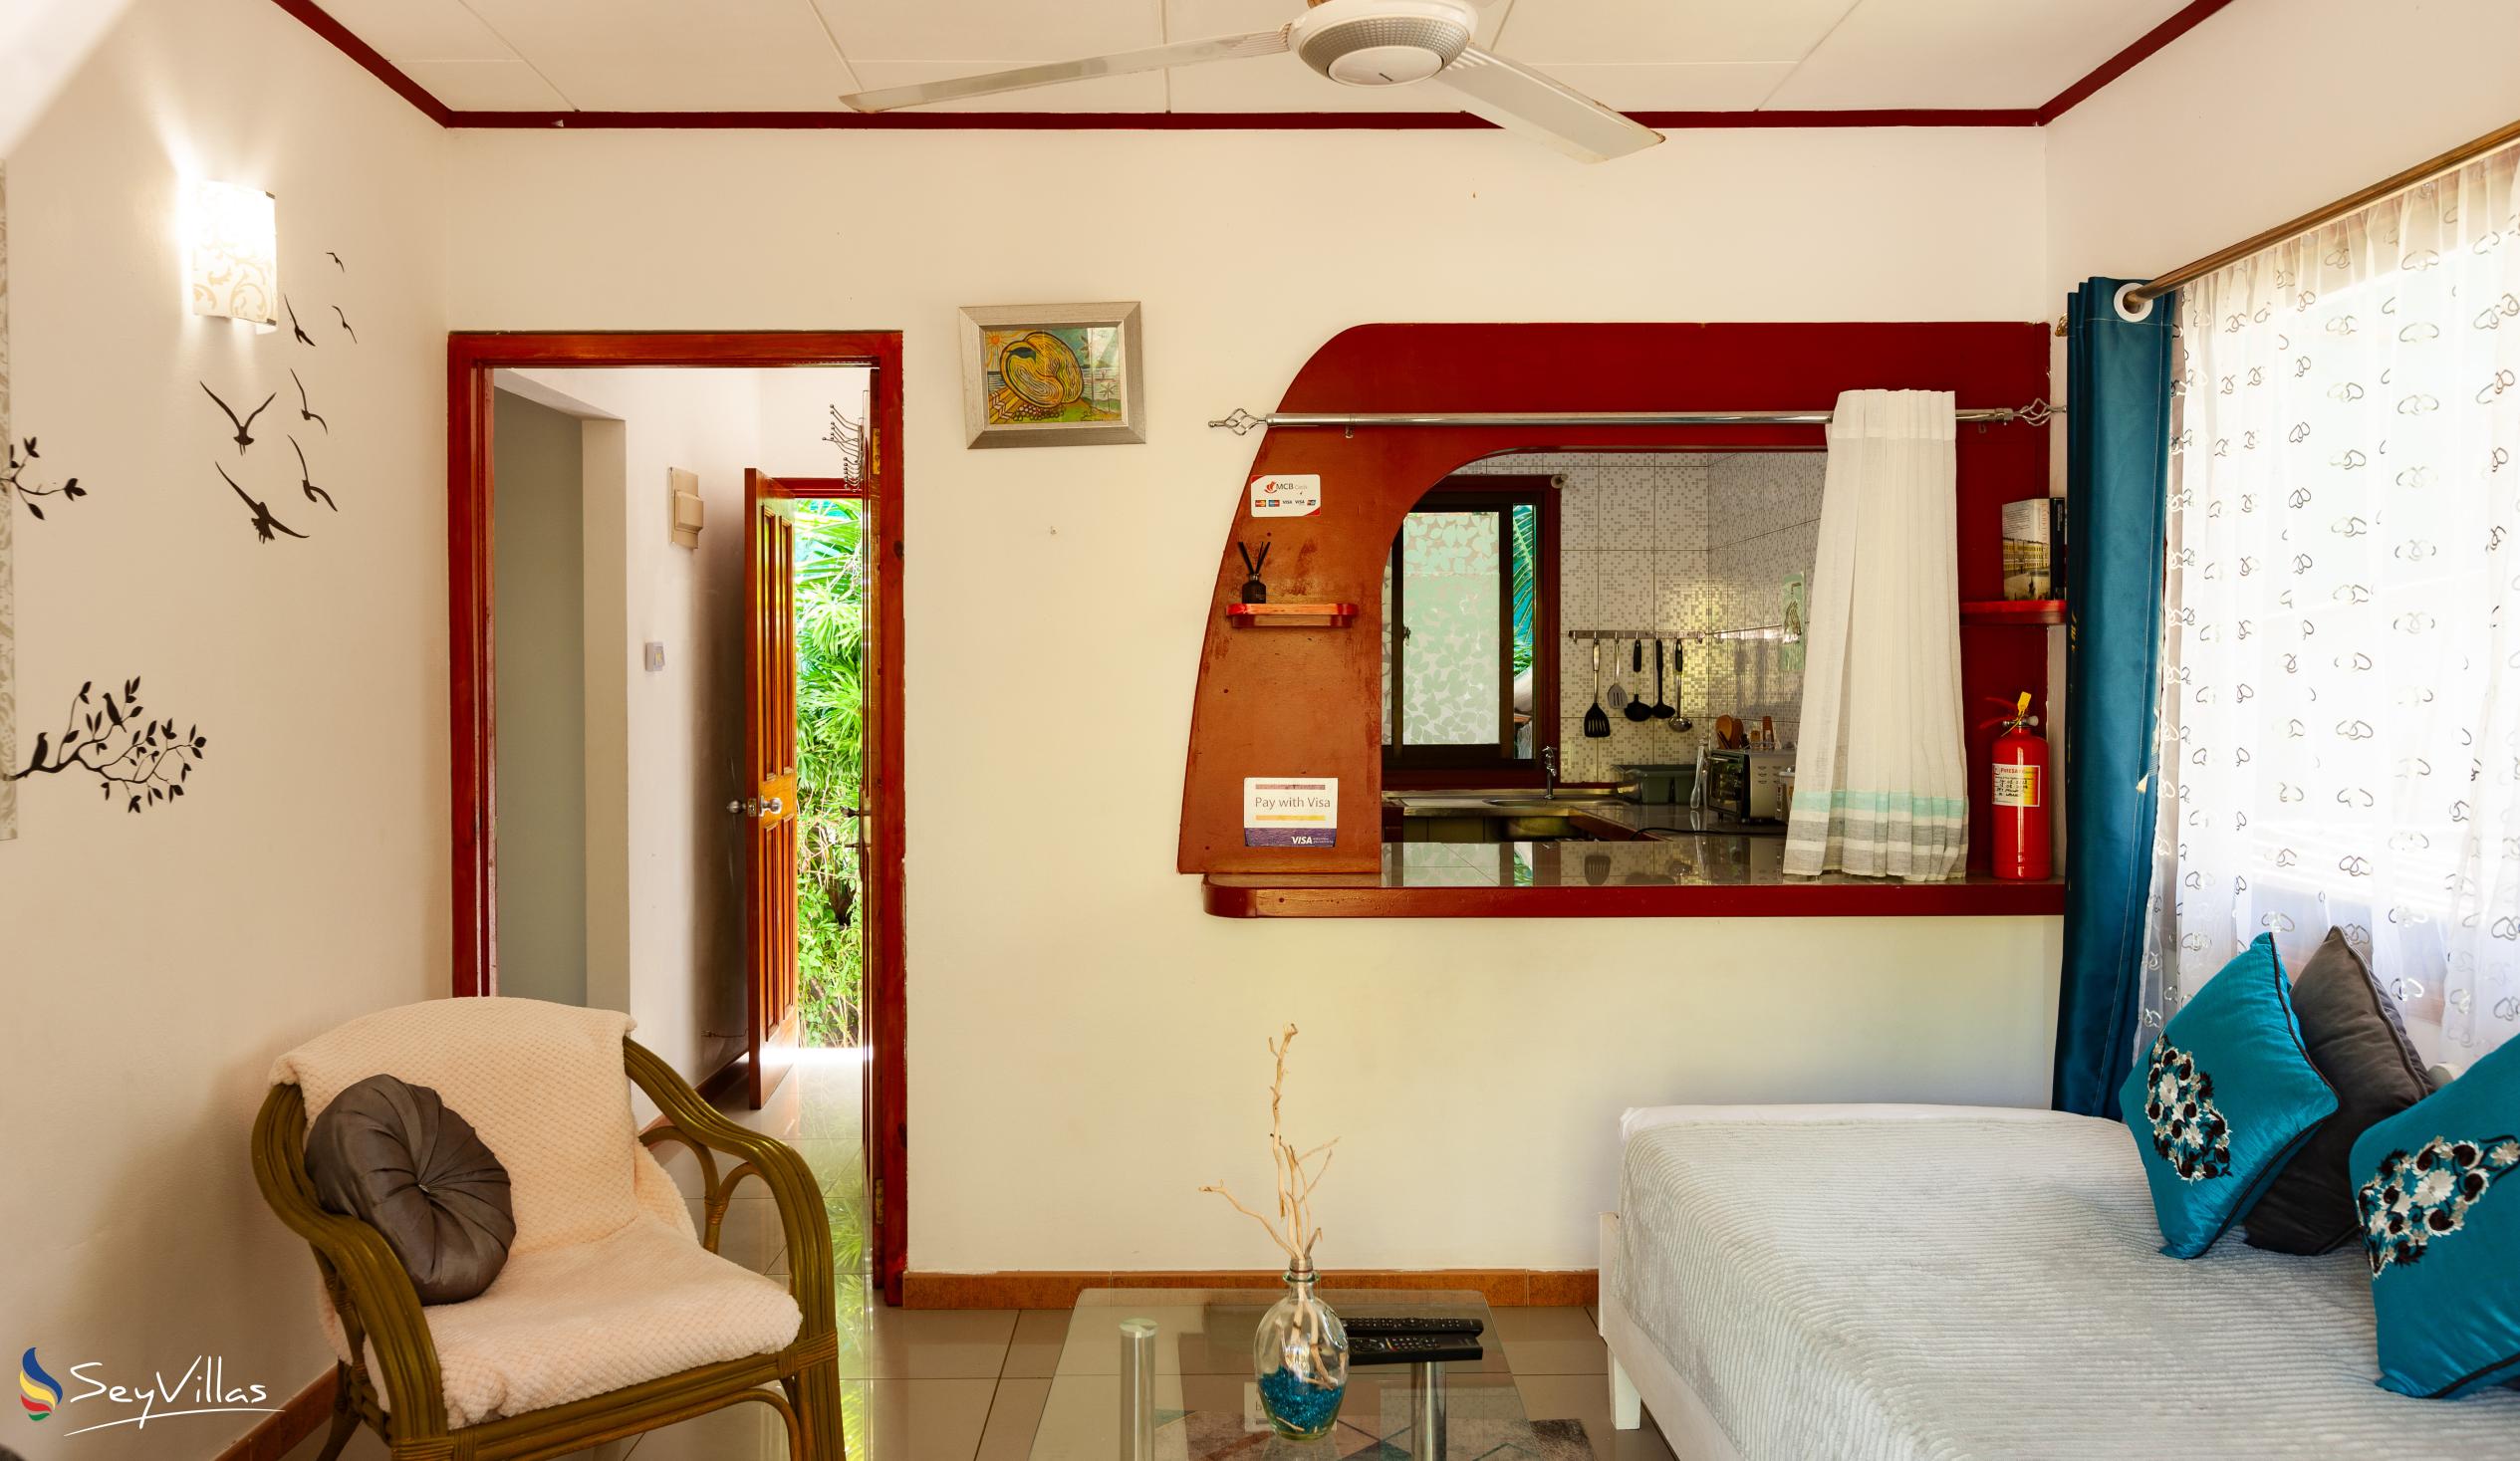 Photo 53: Agnes Cottage - Amethyst House - La Digue (Seychelles)